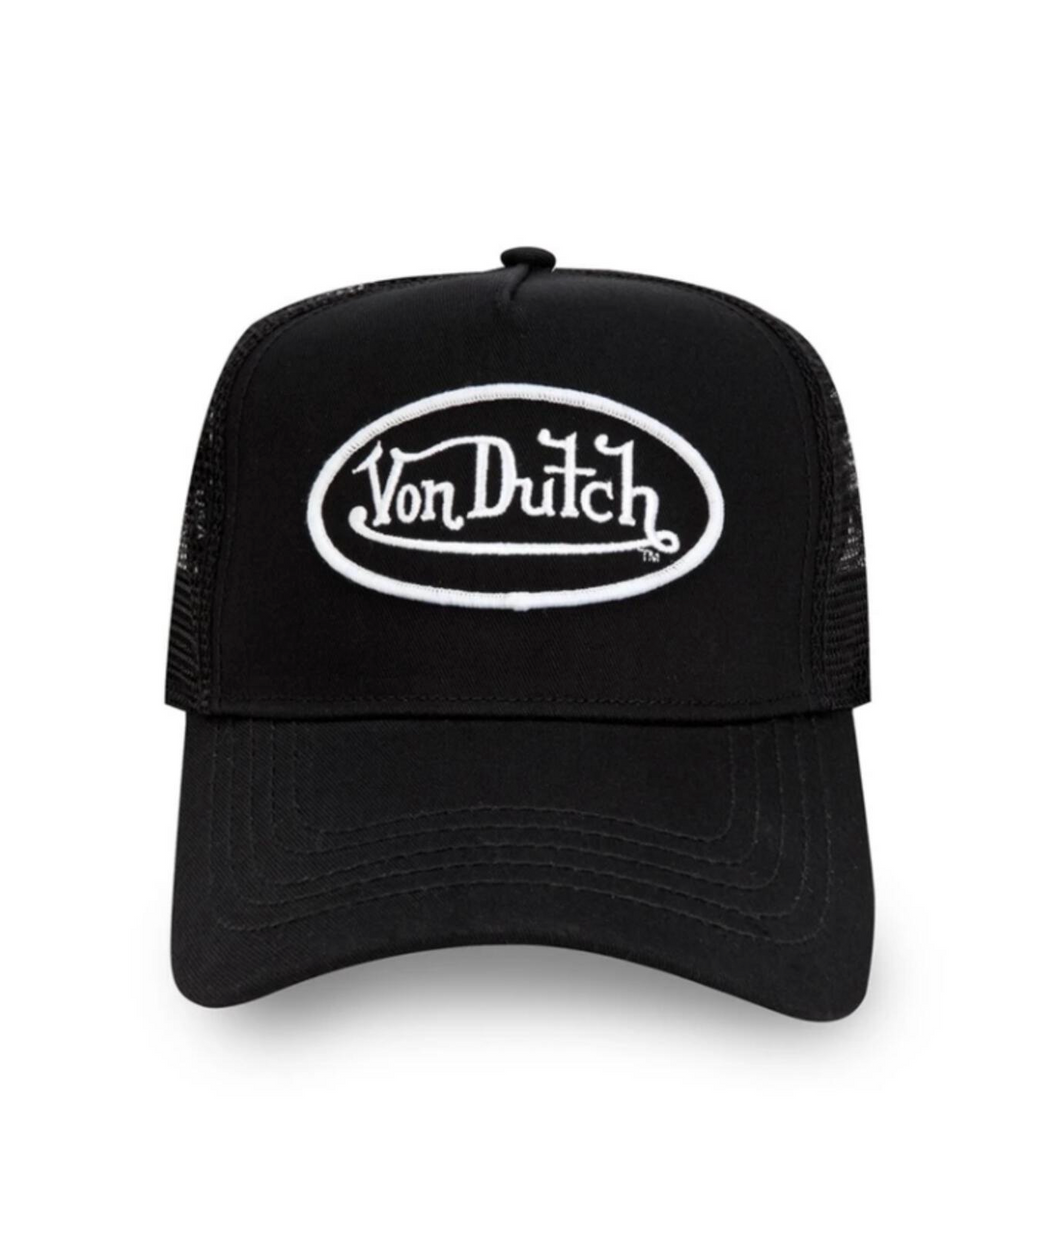 VON DUTCH CLASSIC 51 TRUCKER HAT